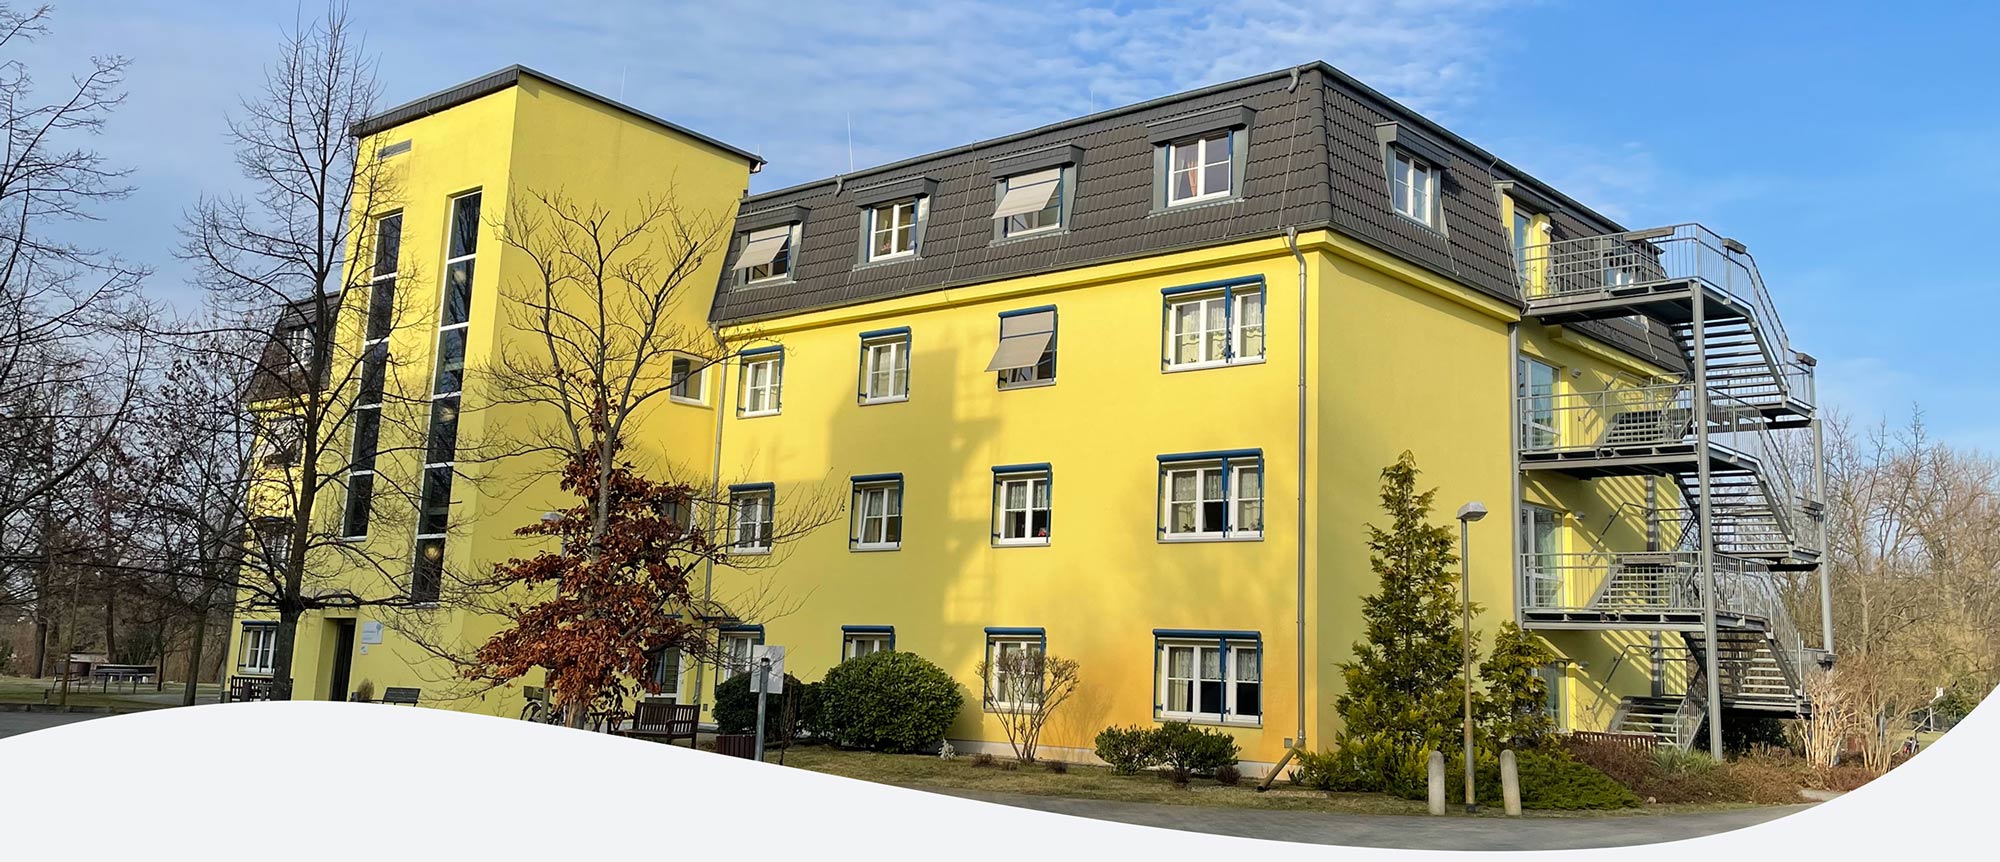 Seniorenzentrum Elsthal in Luckenwalde 4 stöckiges Gebäude mit gelber Fassade im Außenbereich